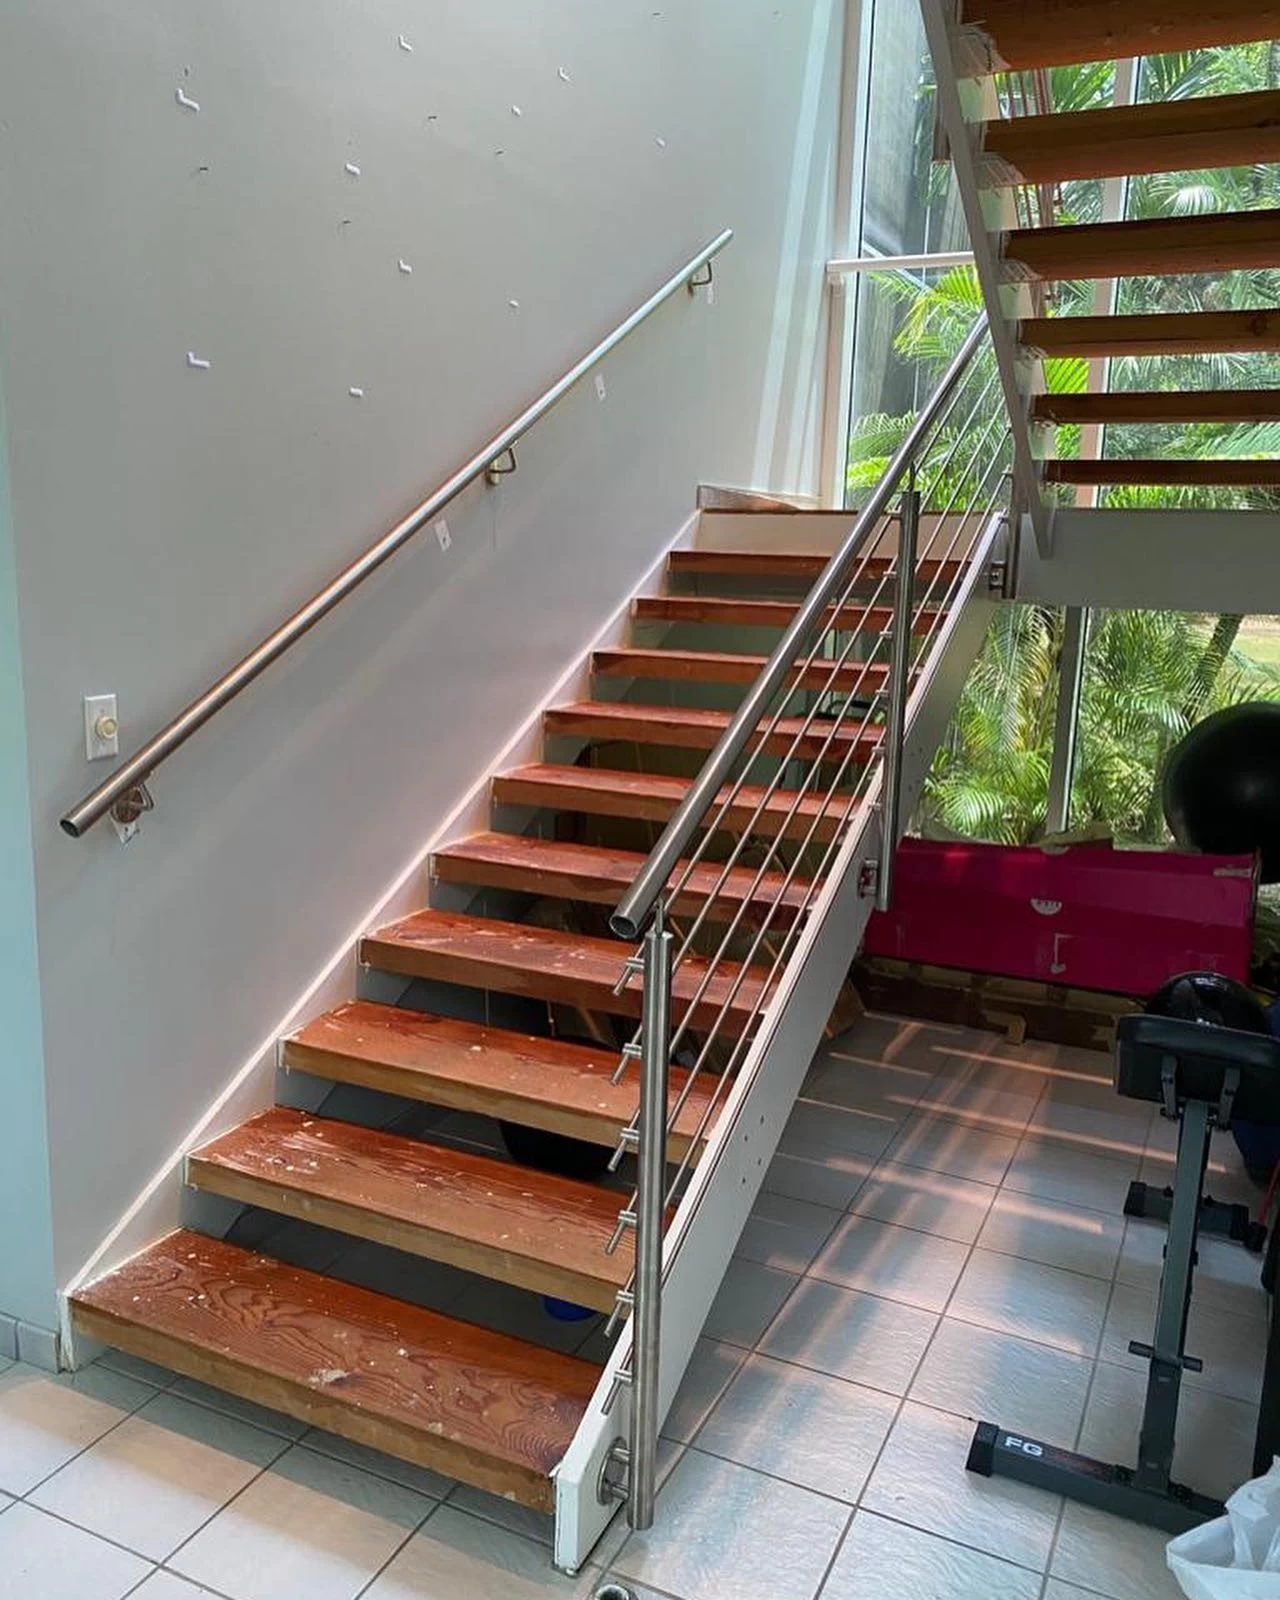 LED Light Balustrade Handrails Balcony Stair Deck Railing Stainless Steel Railing Rod Railing